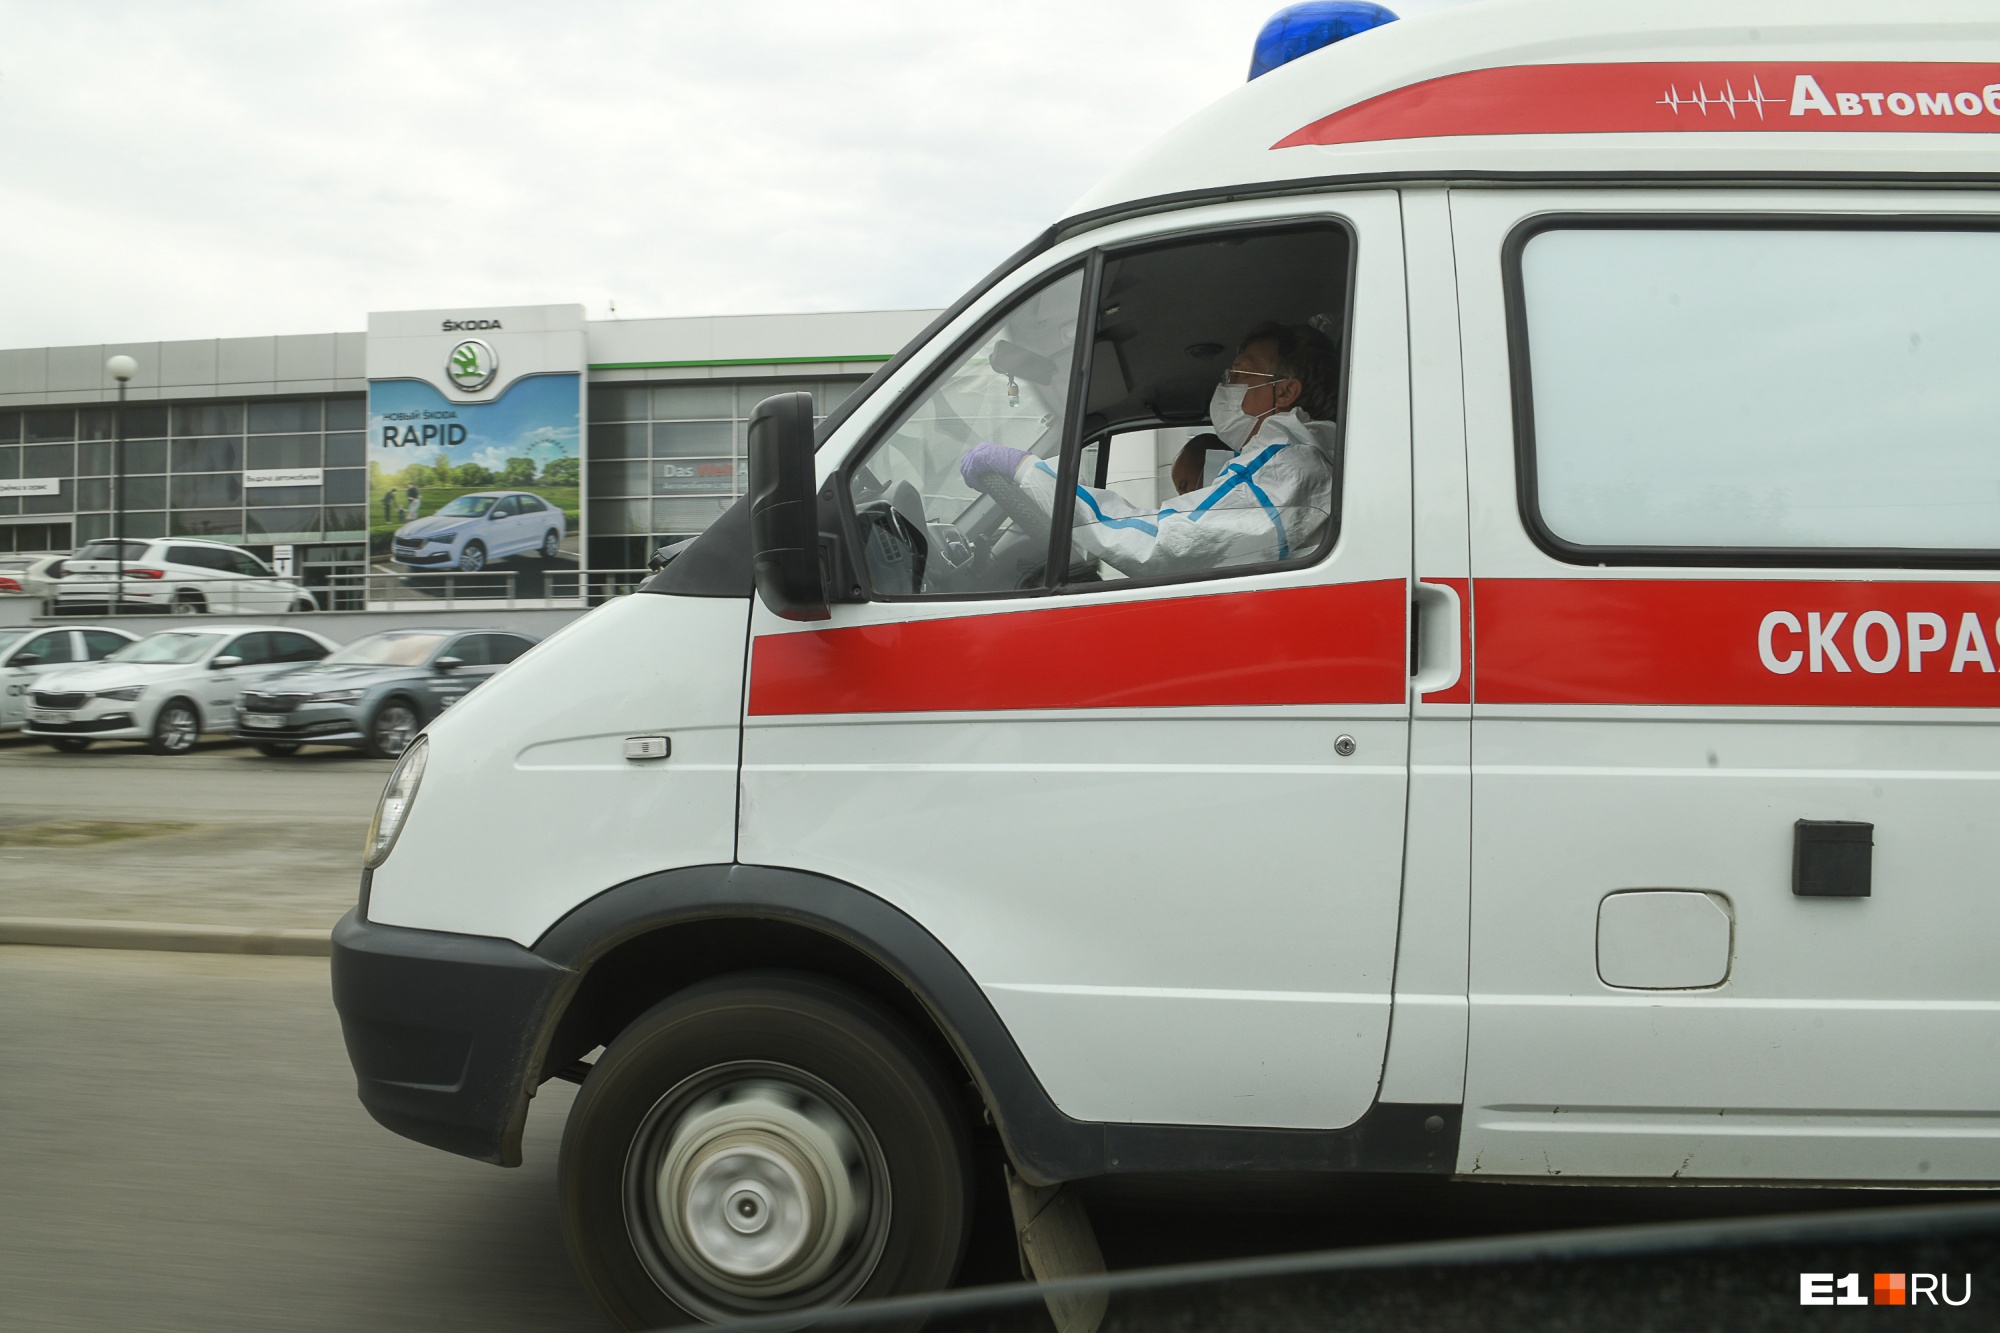 «Коронавирусных» вызовов скорой помощи в Екатеринбурге стало на 60% меньше